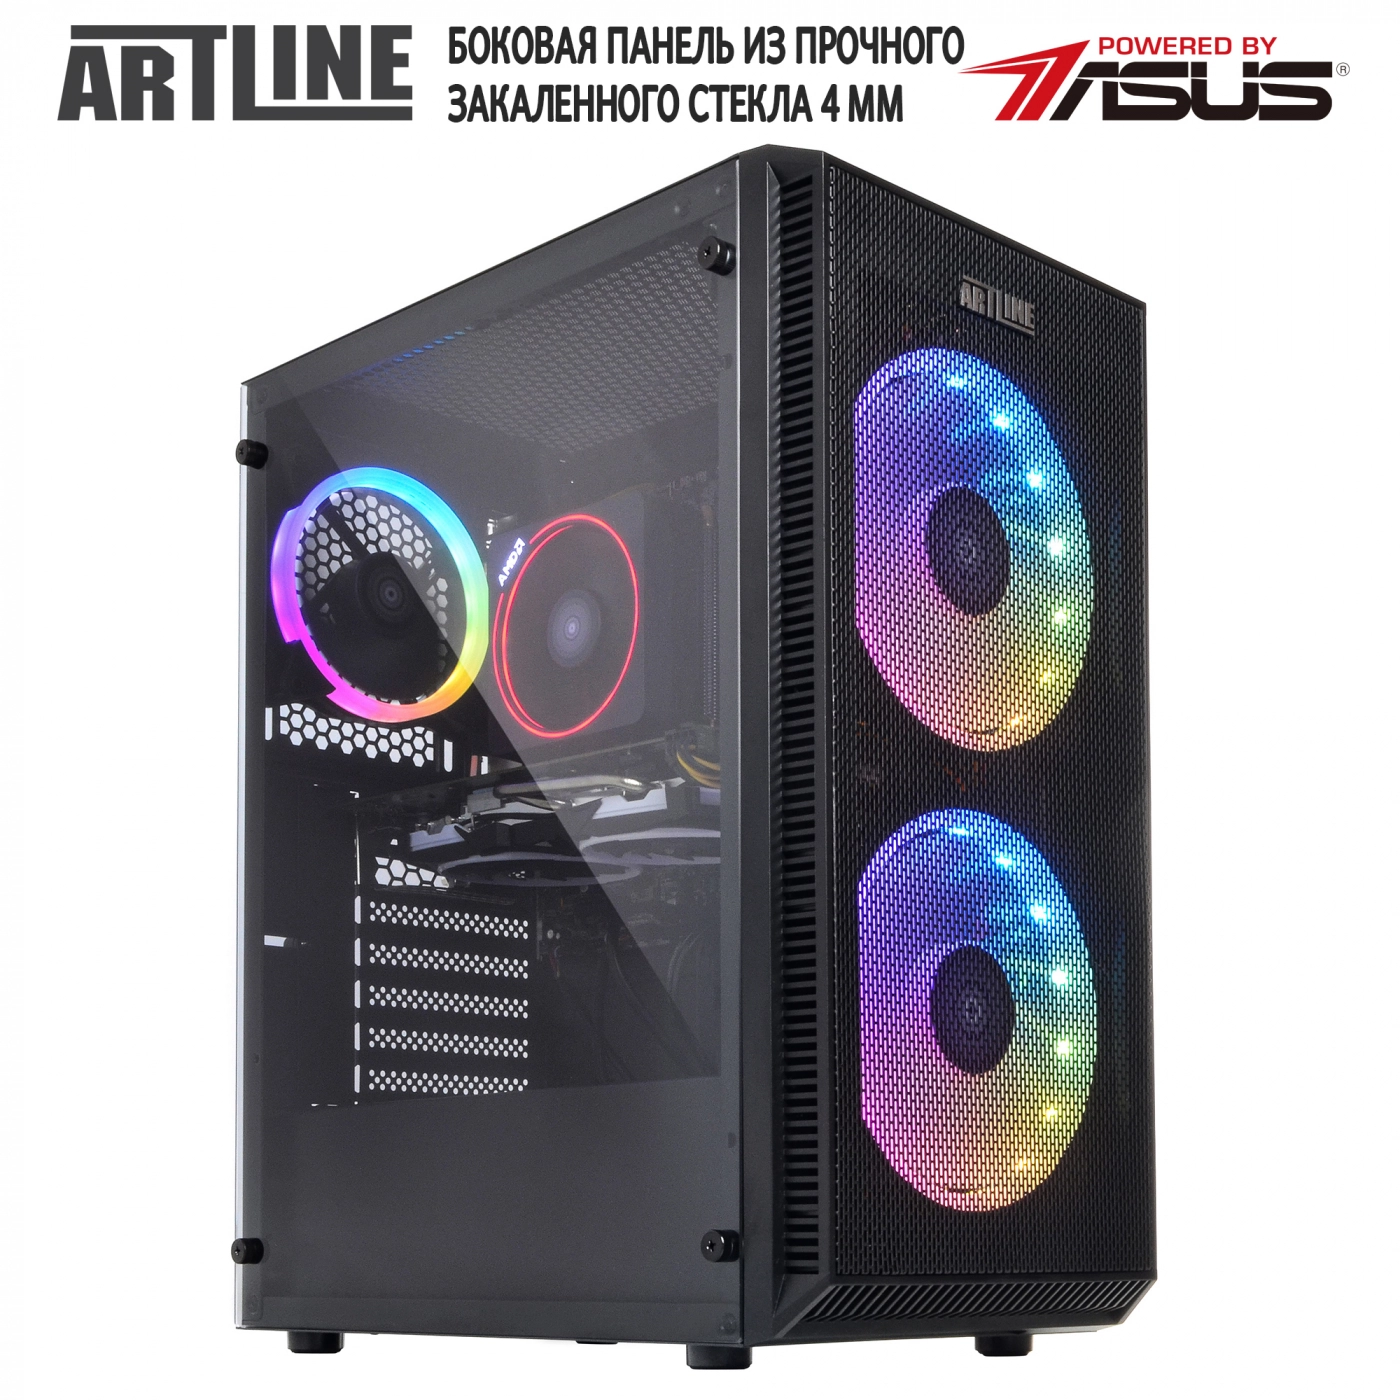 Купить Компьютер ARTLINE Gaming X61v09 - фото 8